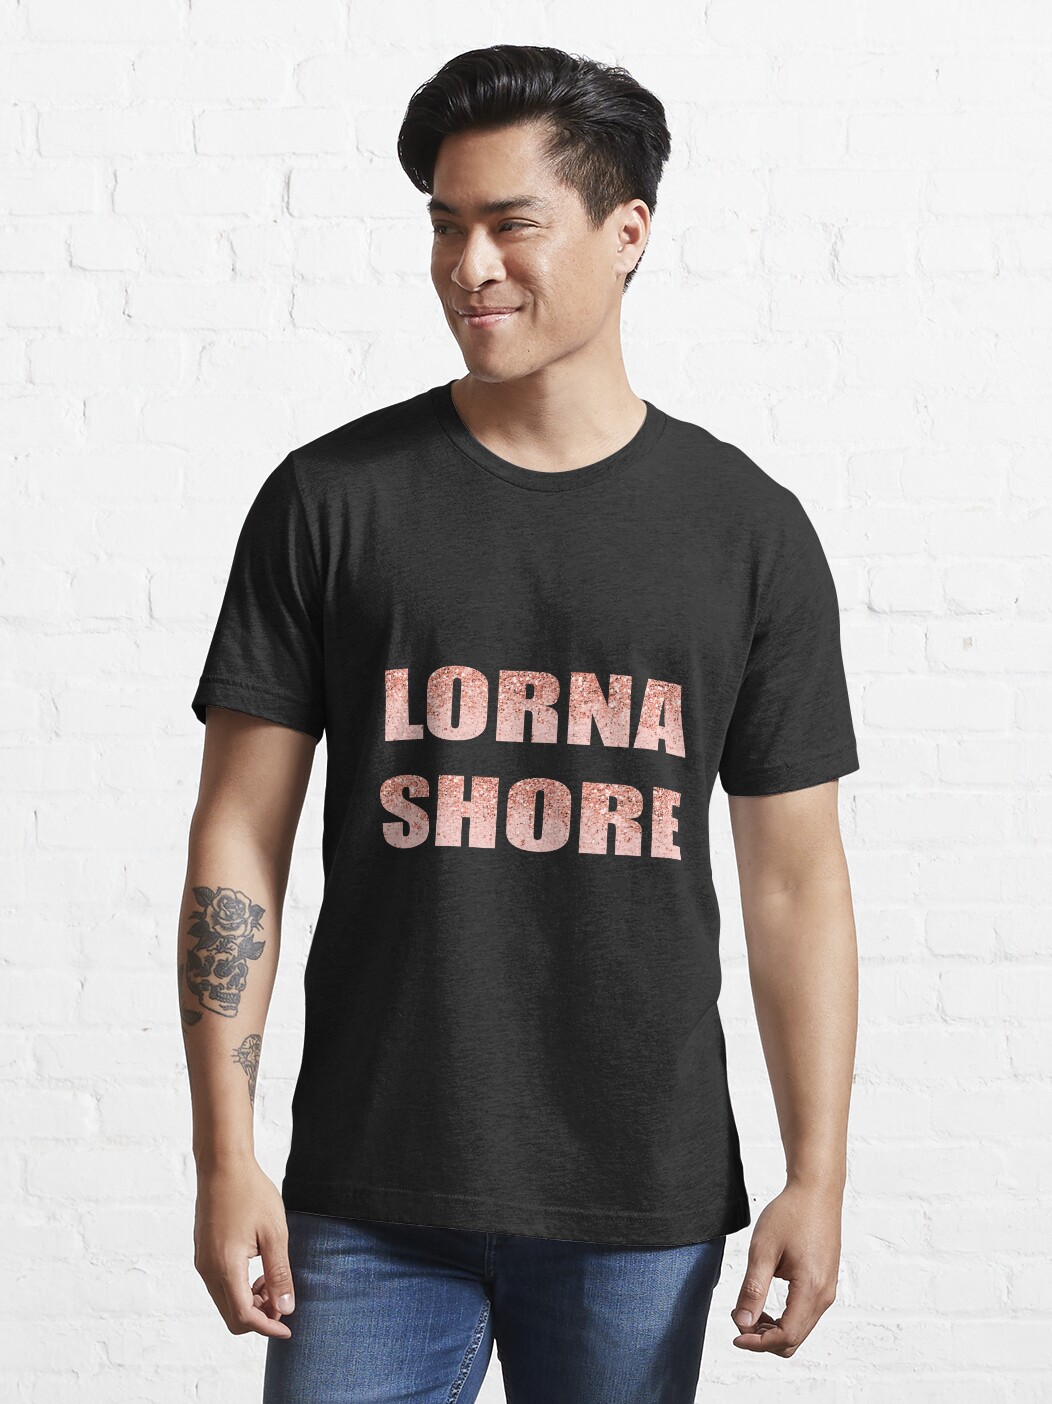 ssrcoslim fit t shirtmens10101001c5ca27c6fronttall three quarter2000x2000 16 - Lorna Shore Shop